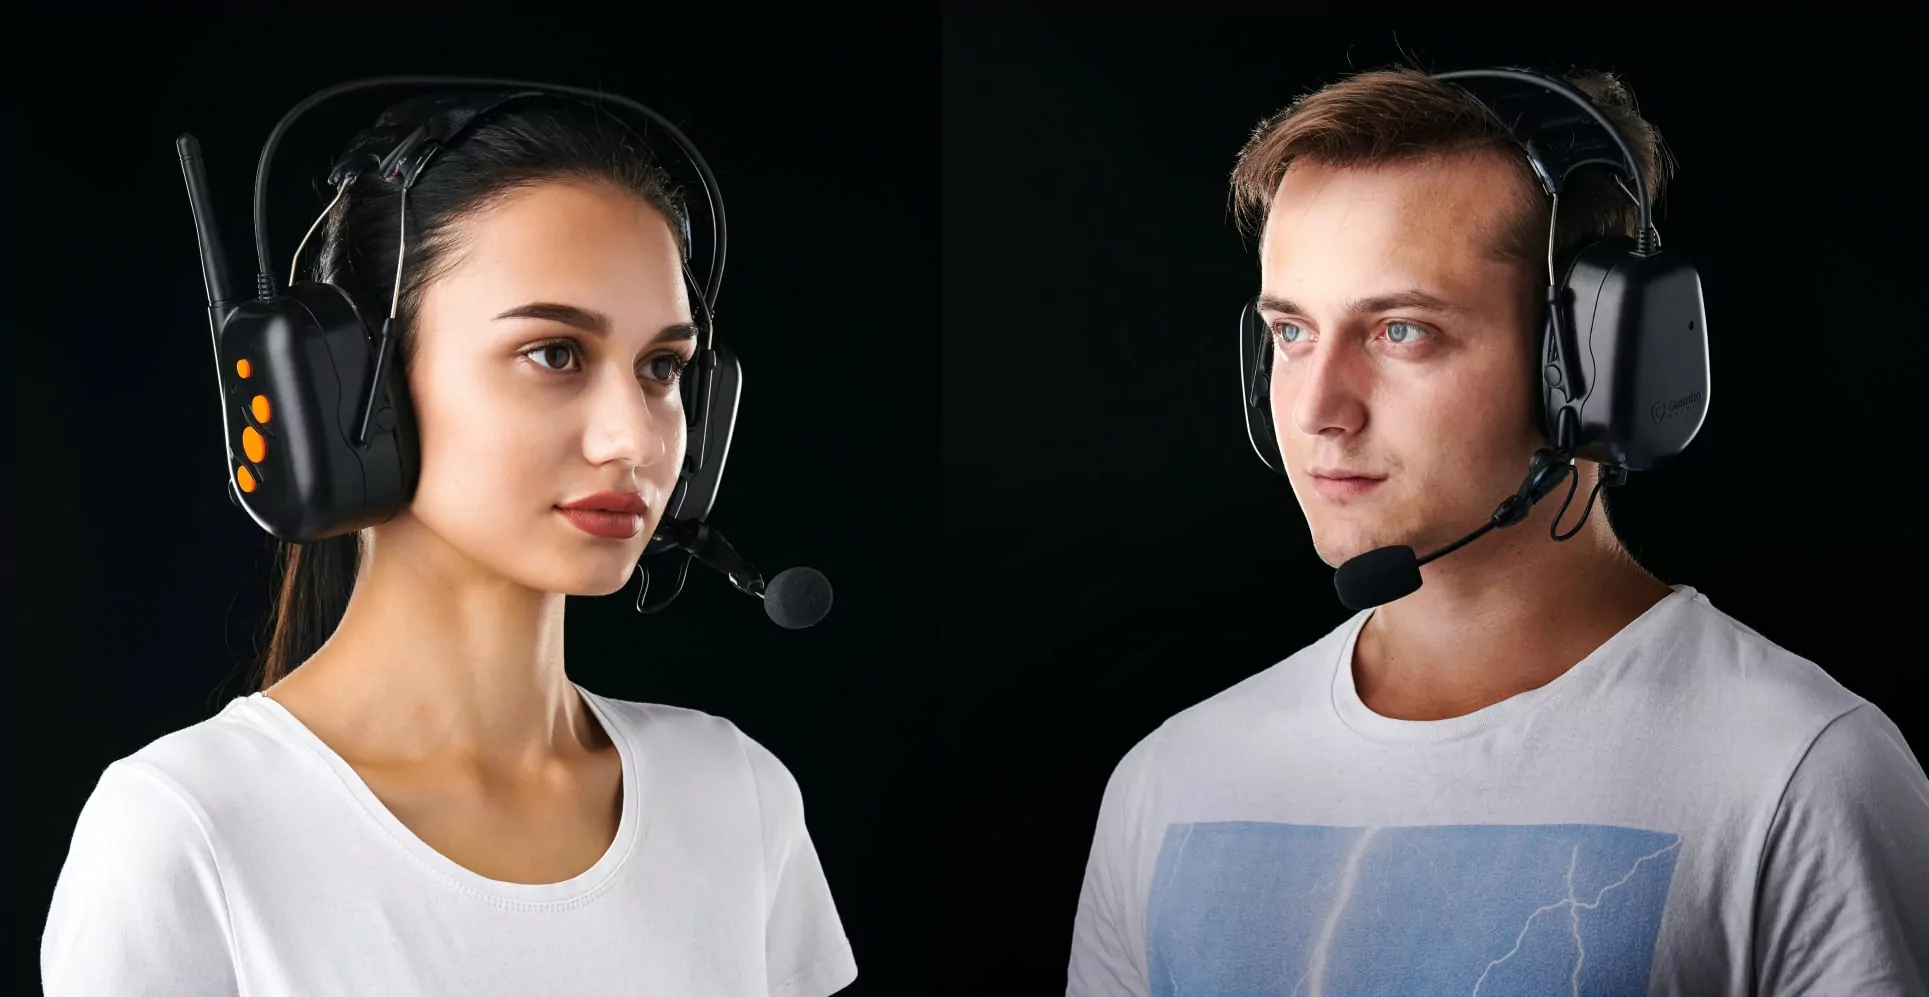 Industrial Bluetooth Headphones on people